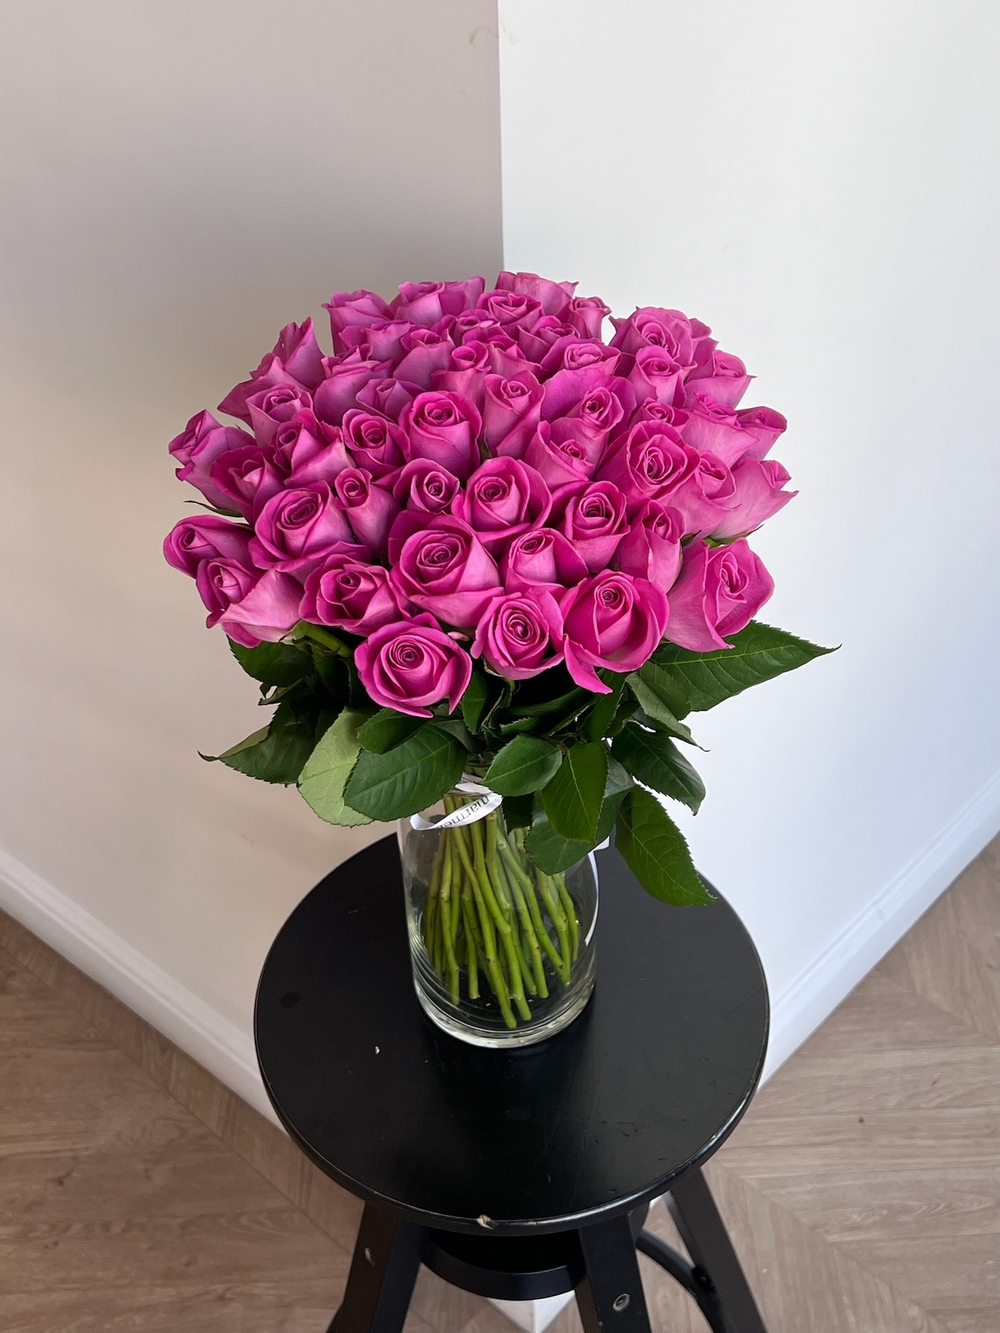 Букет из розовой розы (40см)  51 шт под ленту